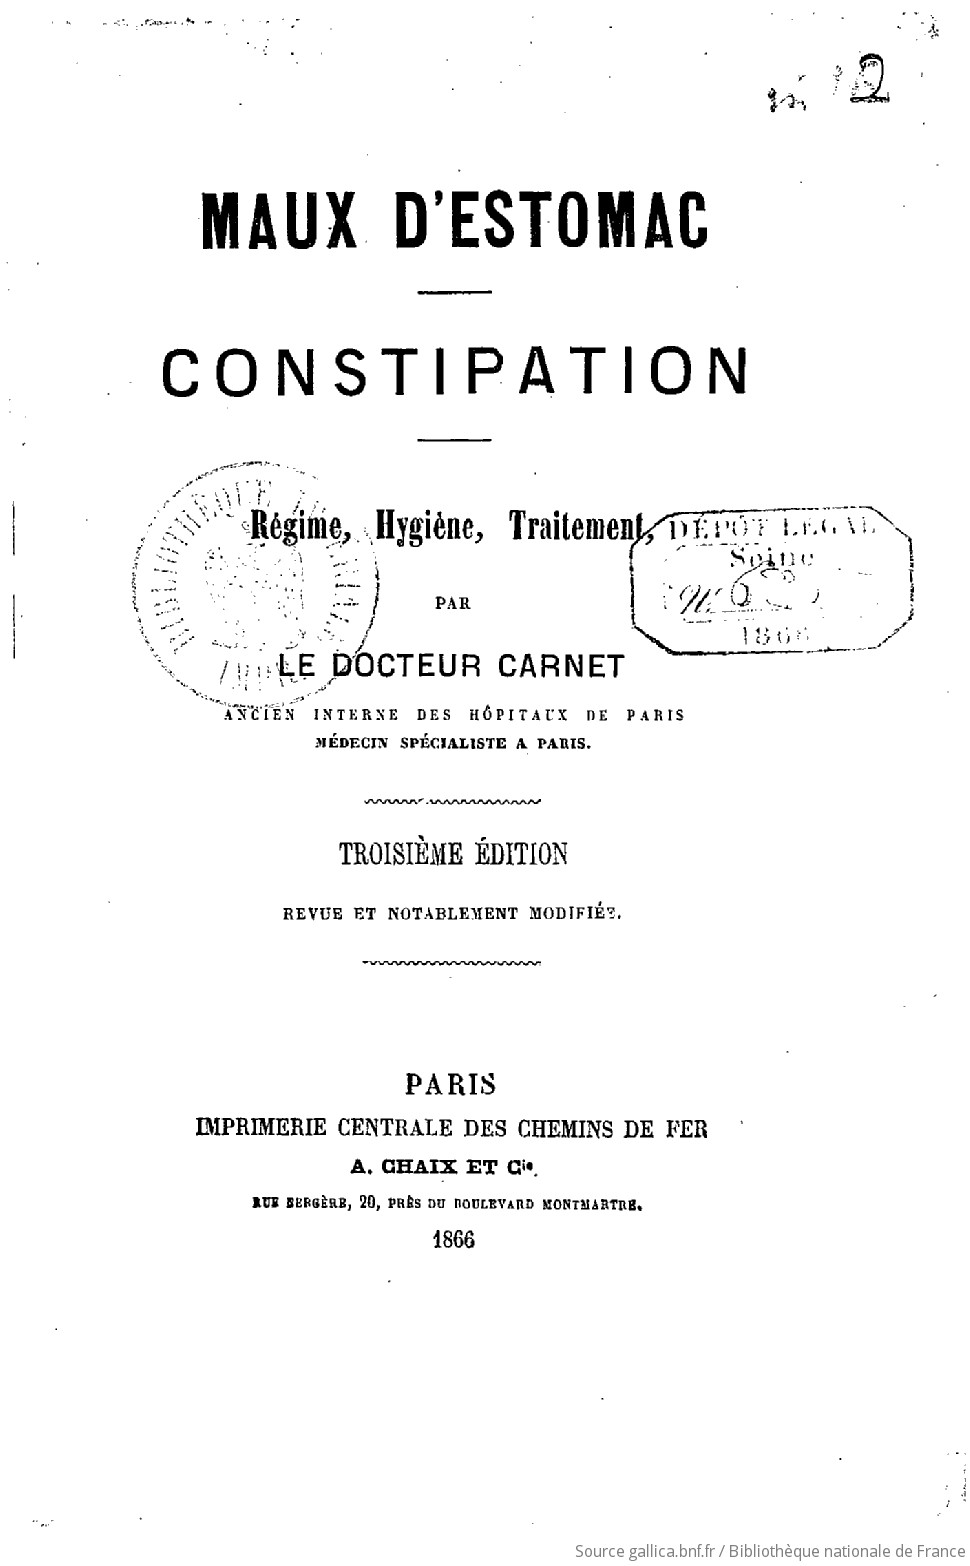 Maux d'estomac, constipation, régime, hygiène, traitement, par le Dr Carnet,  3e édition